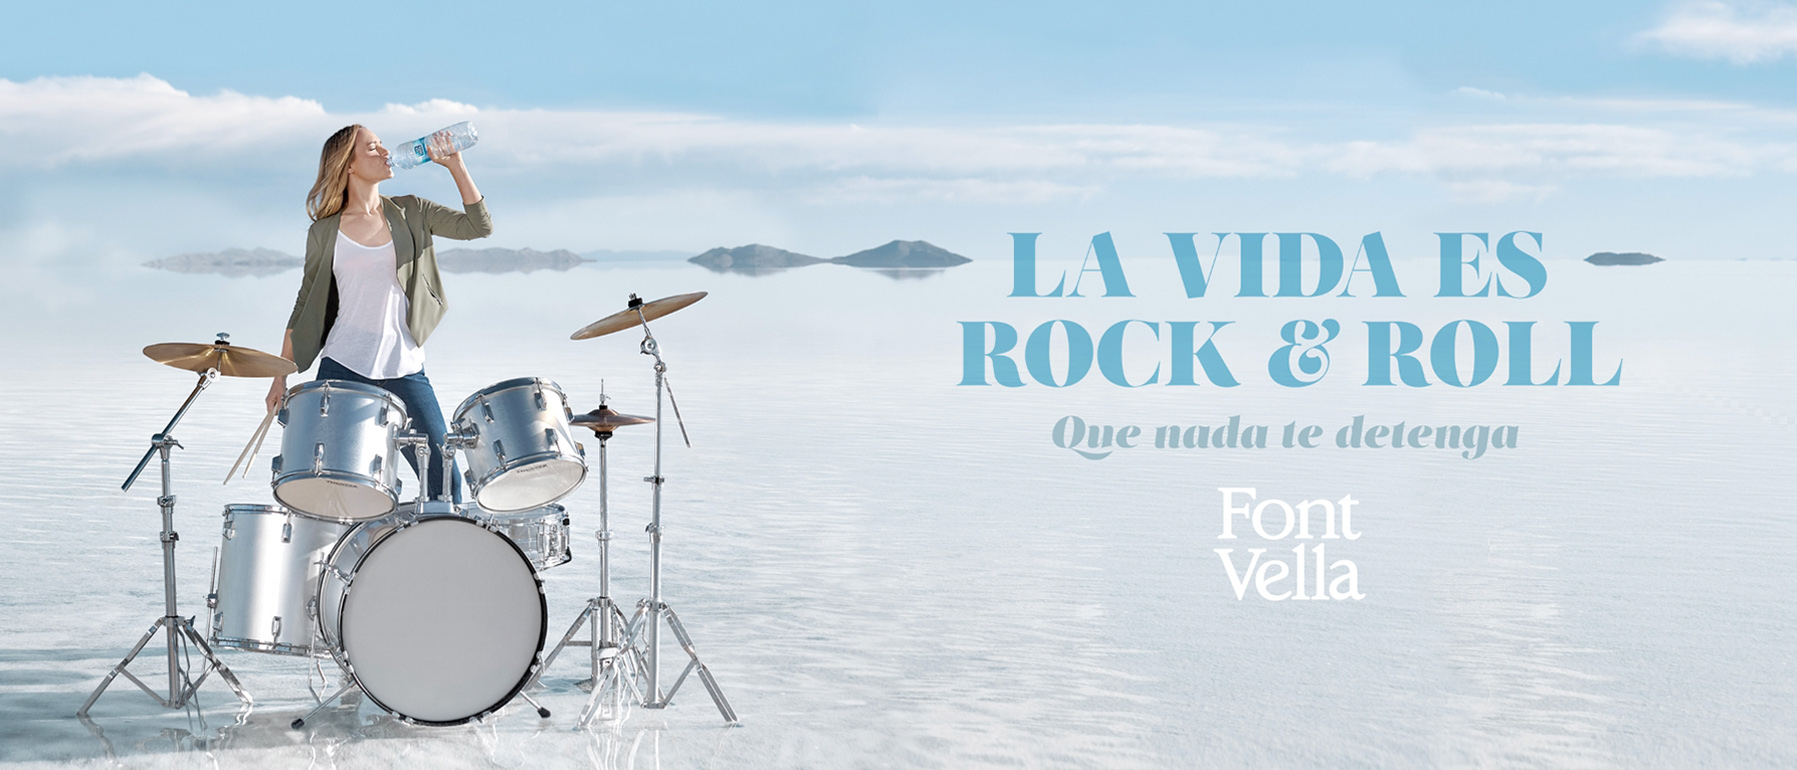 La vida es Rock and Roll - Campaña publicitaria realizada por Alicia Aguilera junto a Enri Mür Studio para la marca Font Vella.